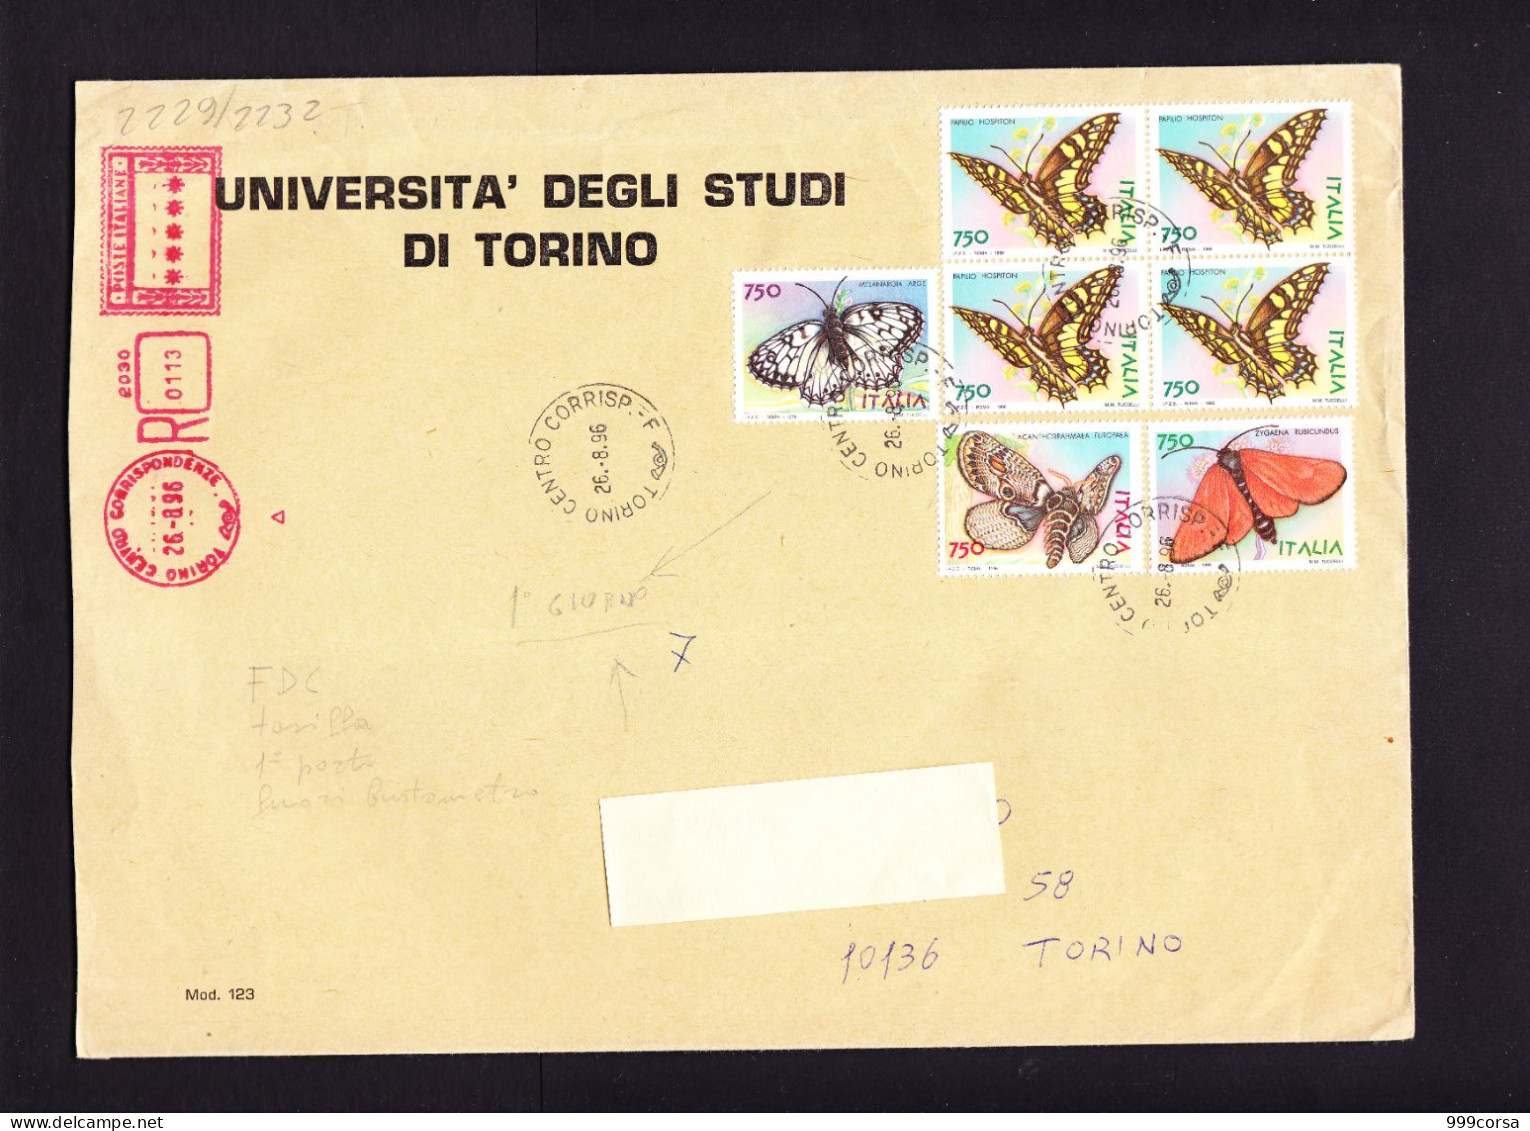 Italia, Farfalle,Papillons,serie Completa (Melanargia Arge,Papilio Hospiton,Zygaena Rubicundus,ecc.) Racc. 26-8-1996, - Farfalle